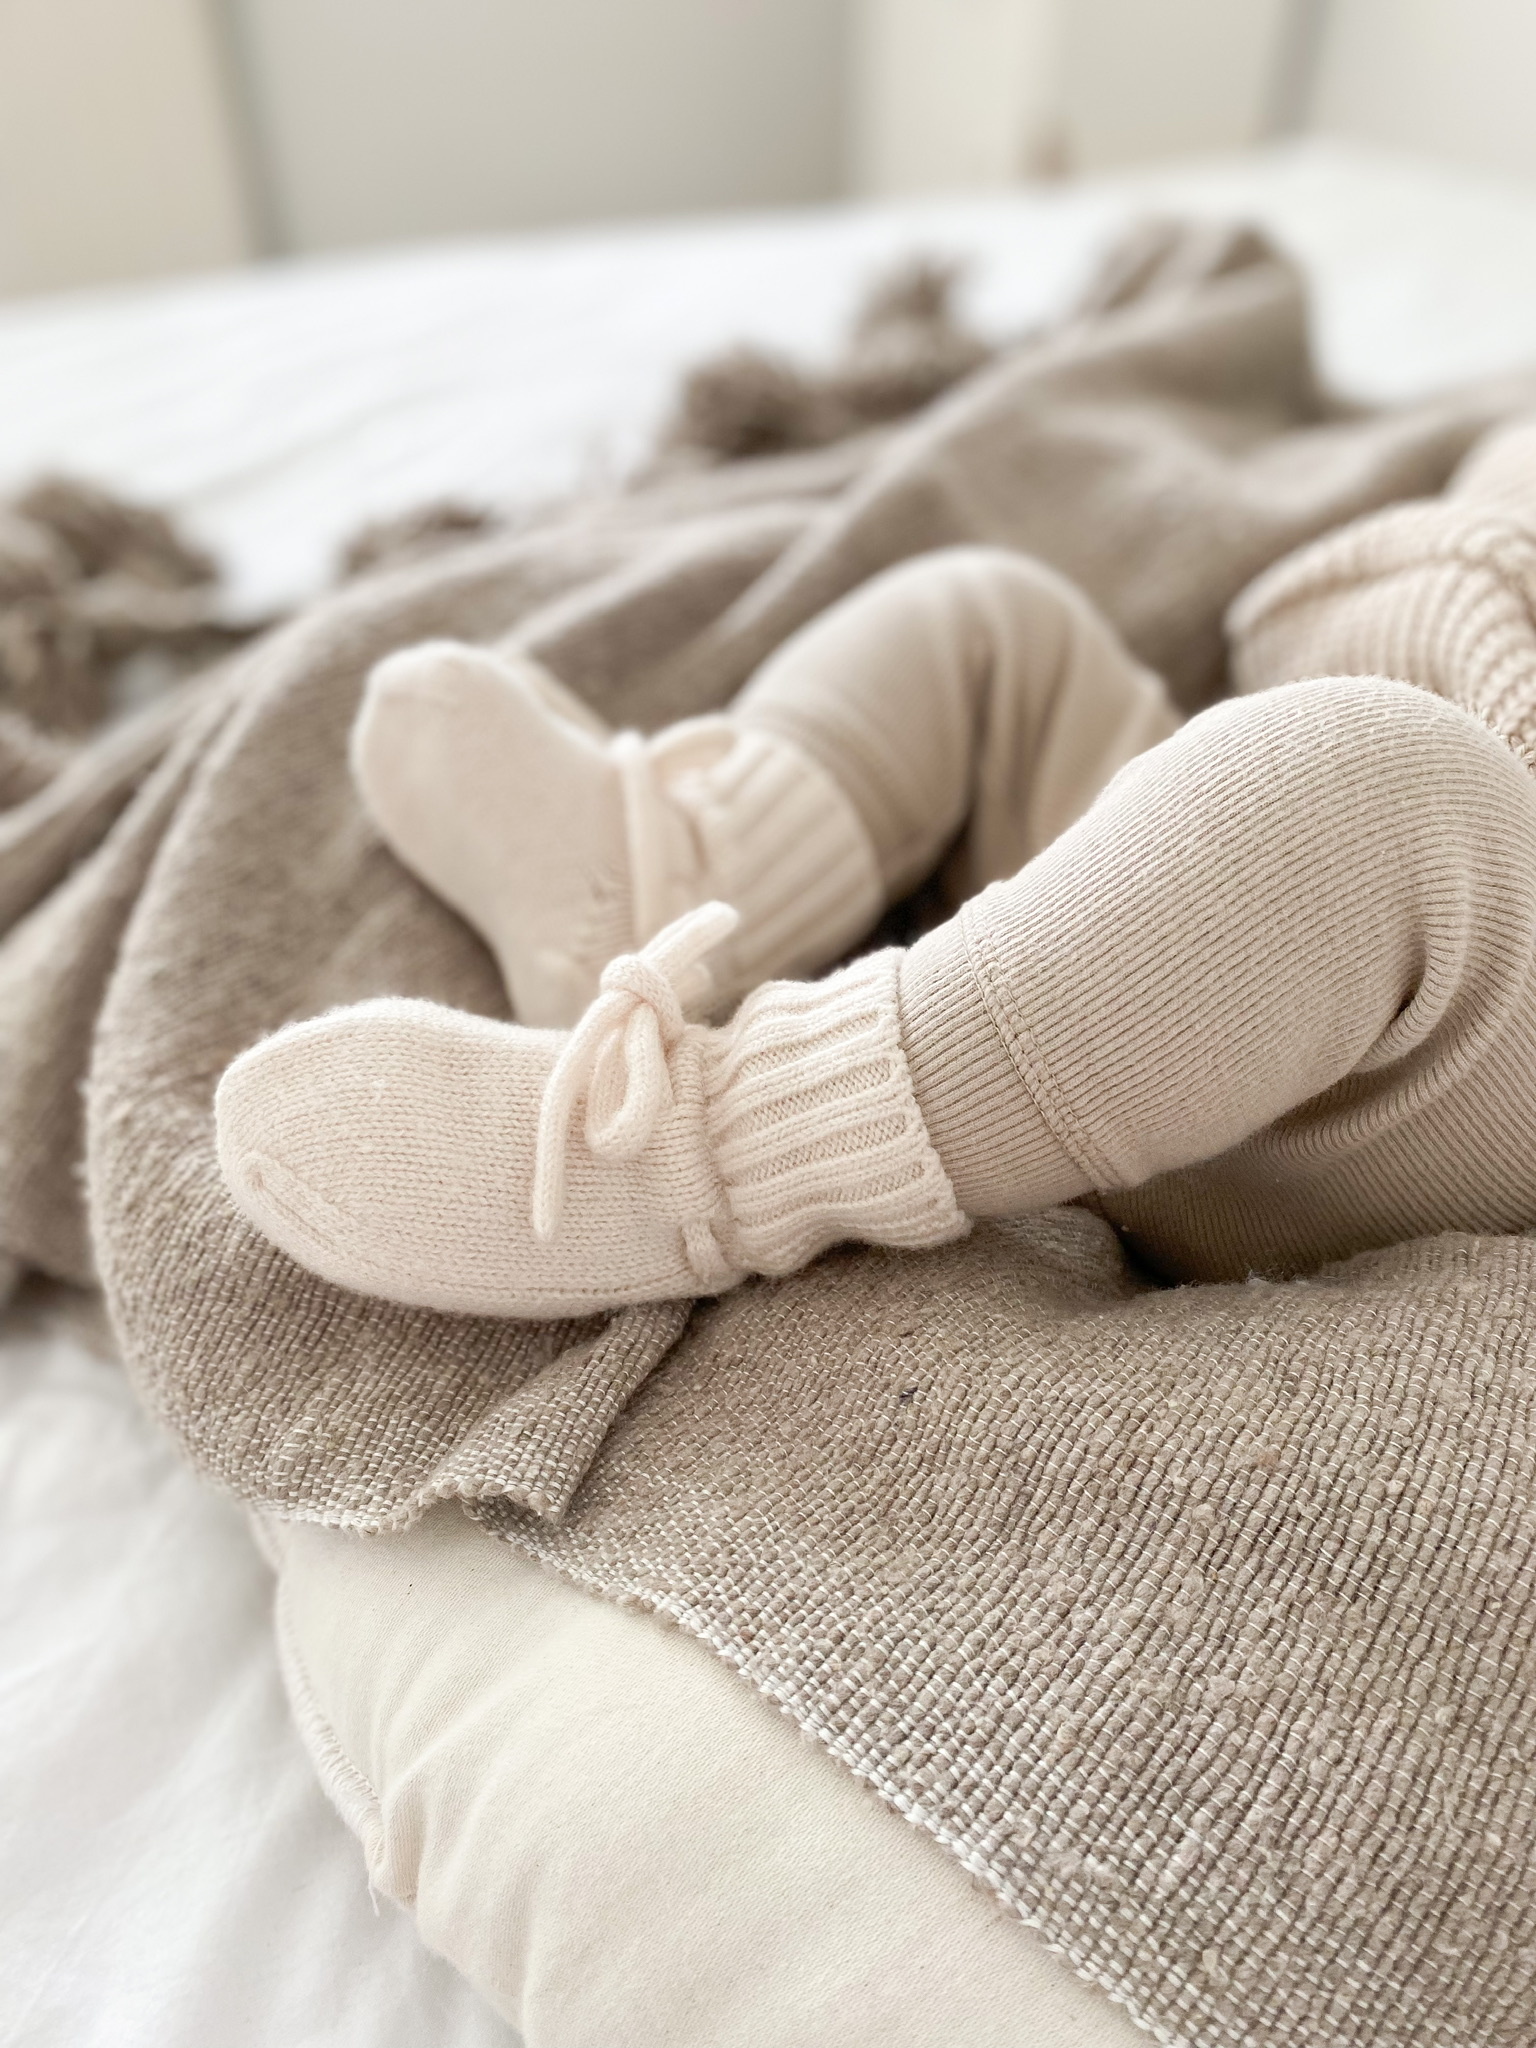 capsule jeans Schrijft een rapport Merino wol booties off white - 4 baby en kids